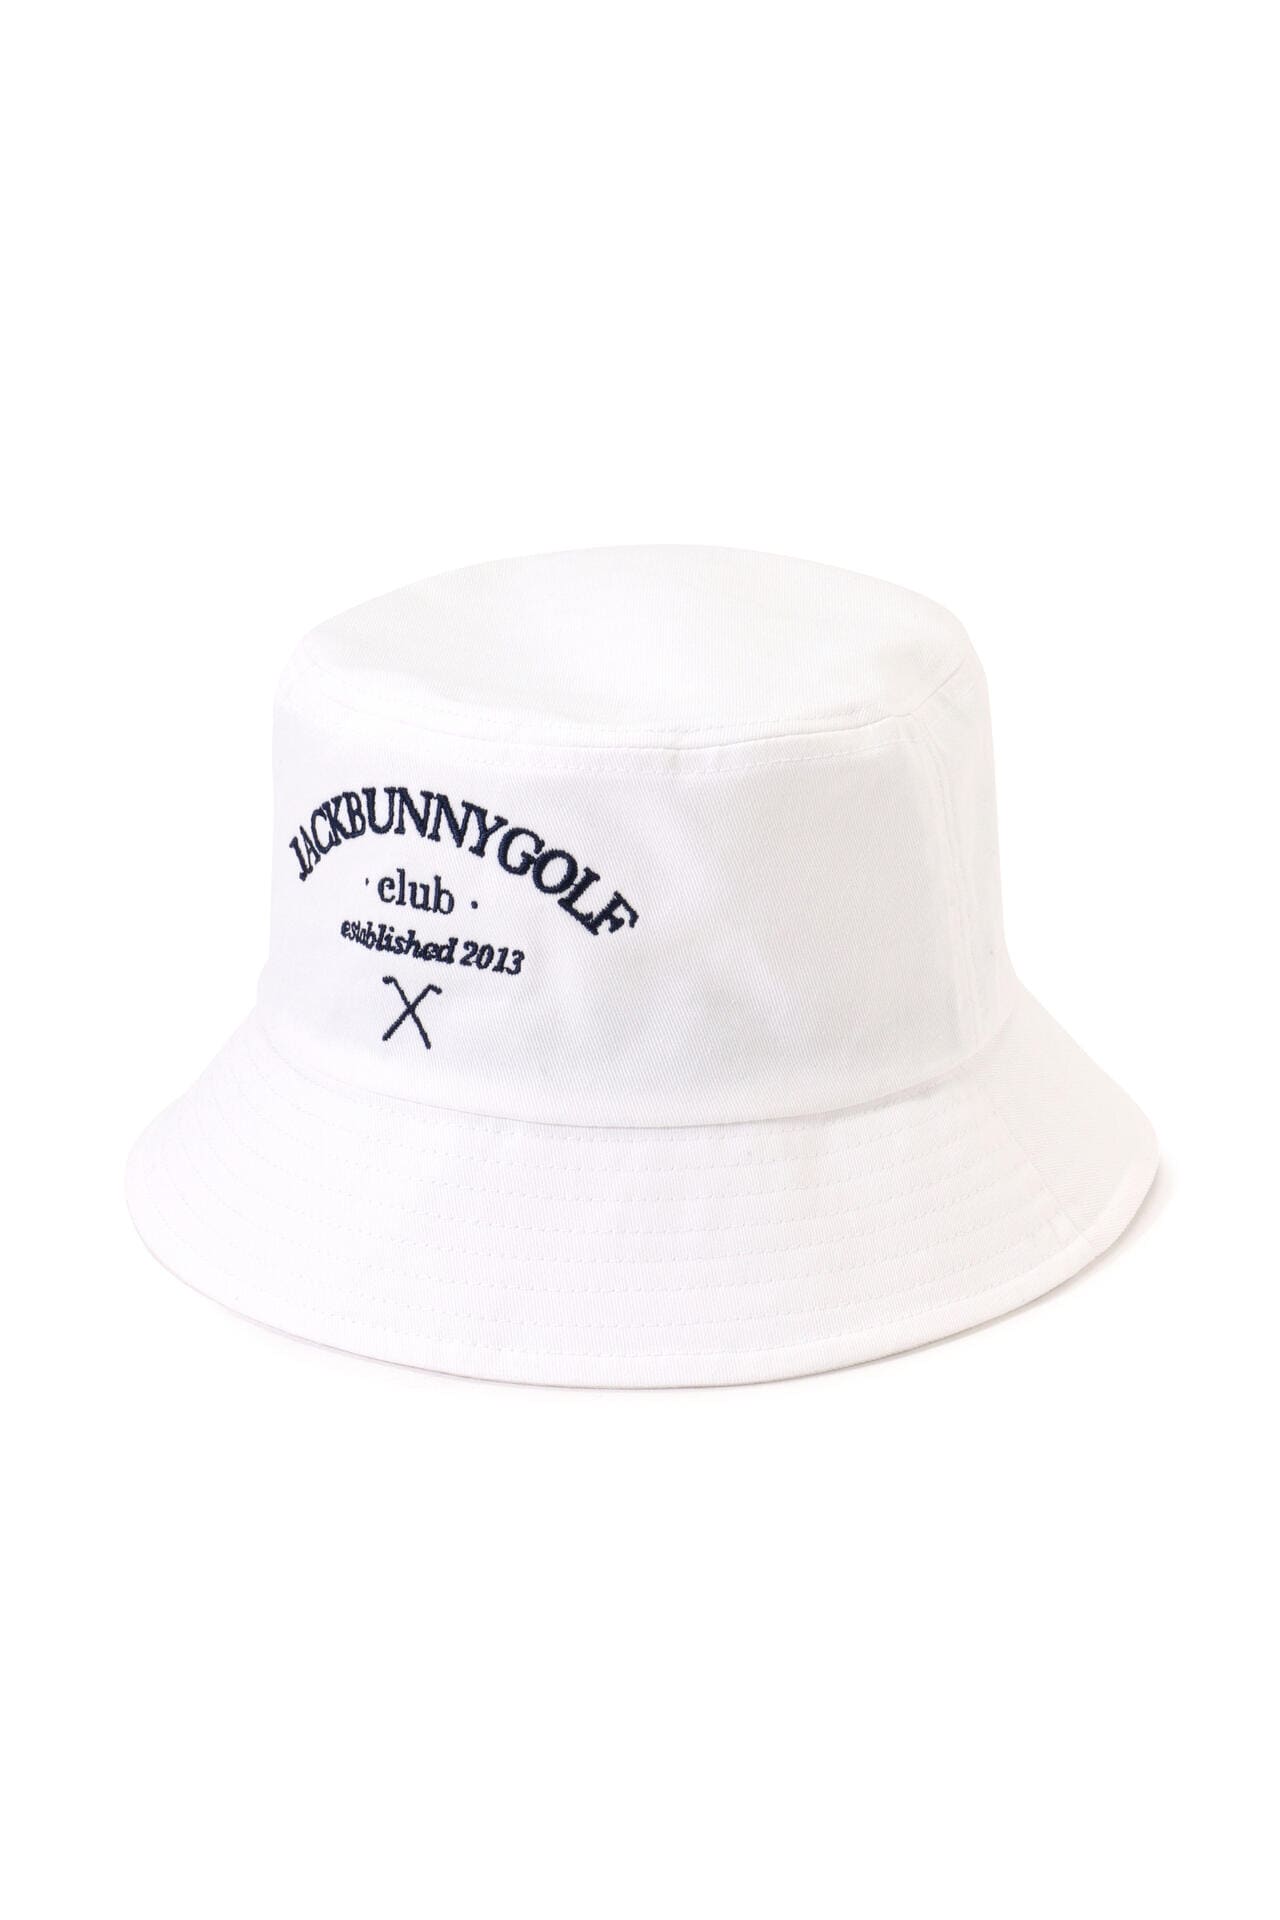 超特価得価オフホワイト バケットハット ユニセックス コットン ロゴ刺繍 帽子 帽子